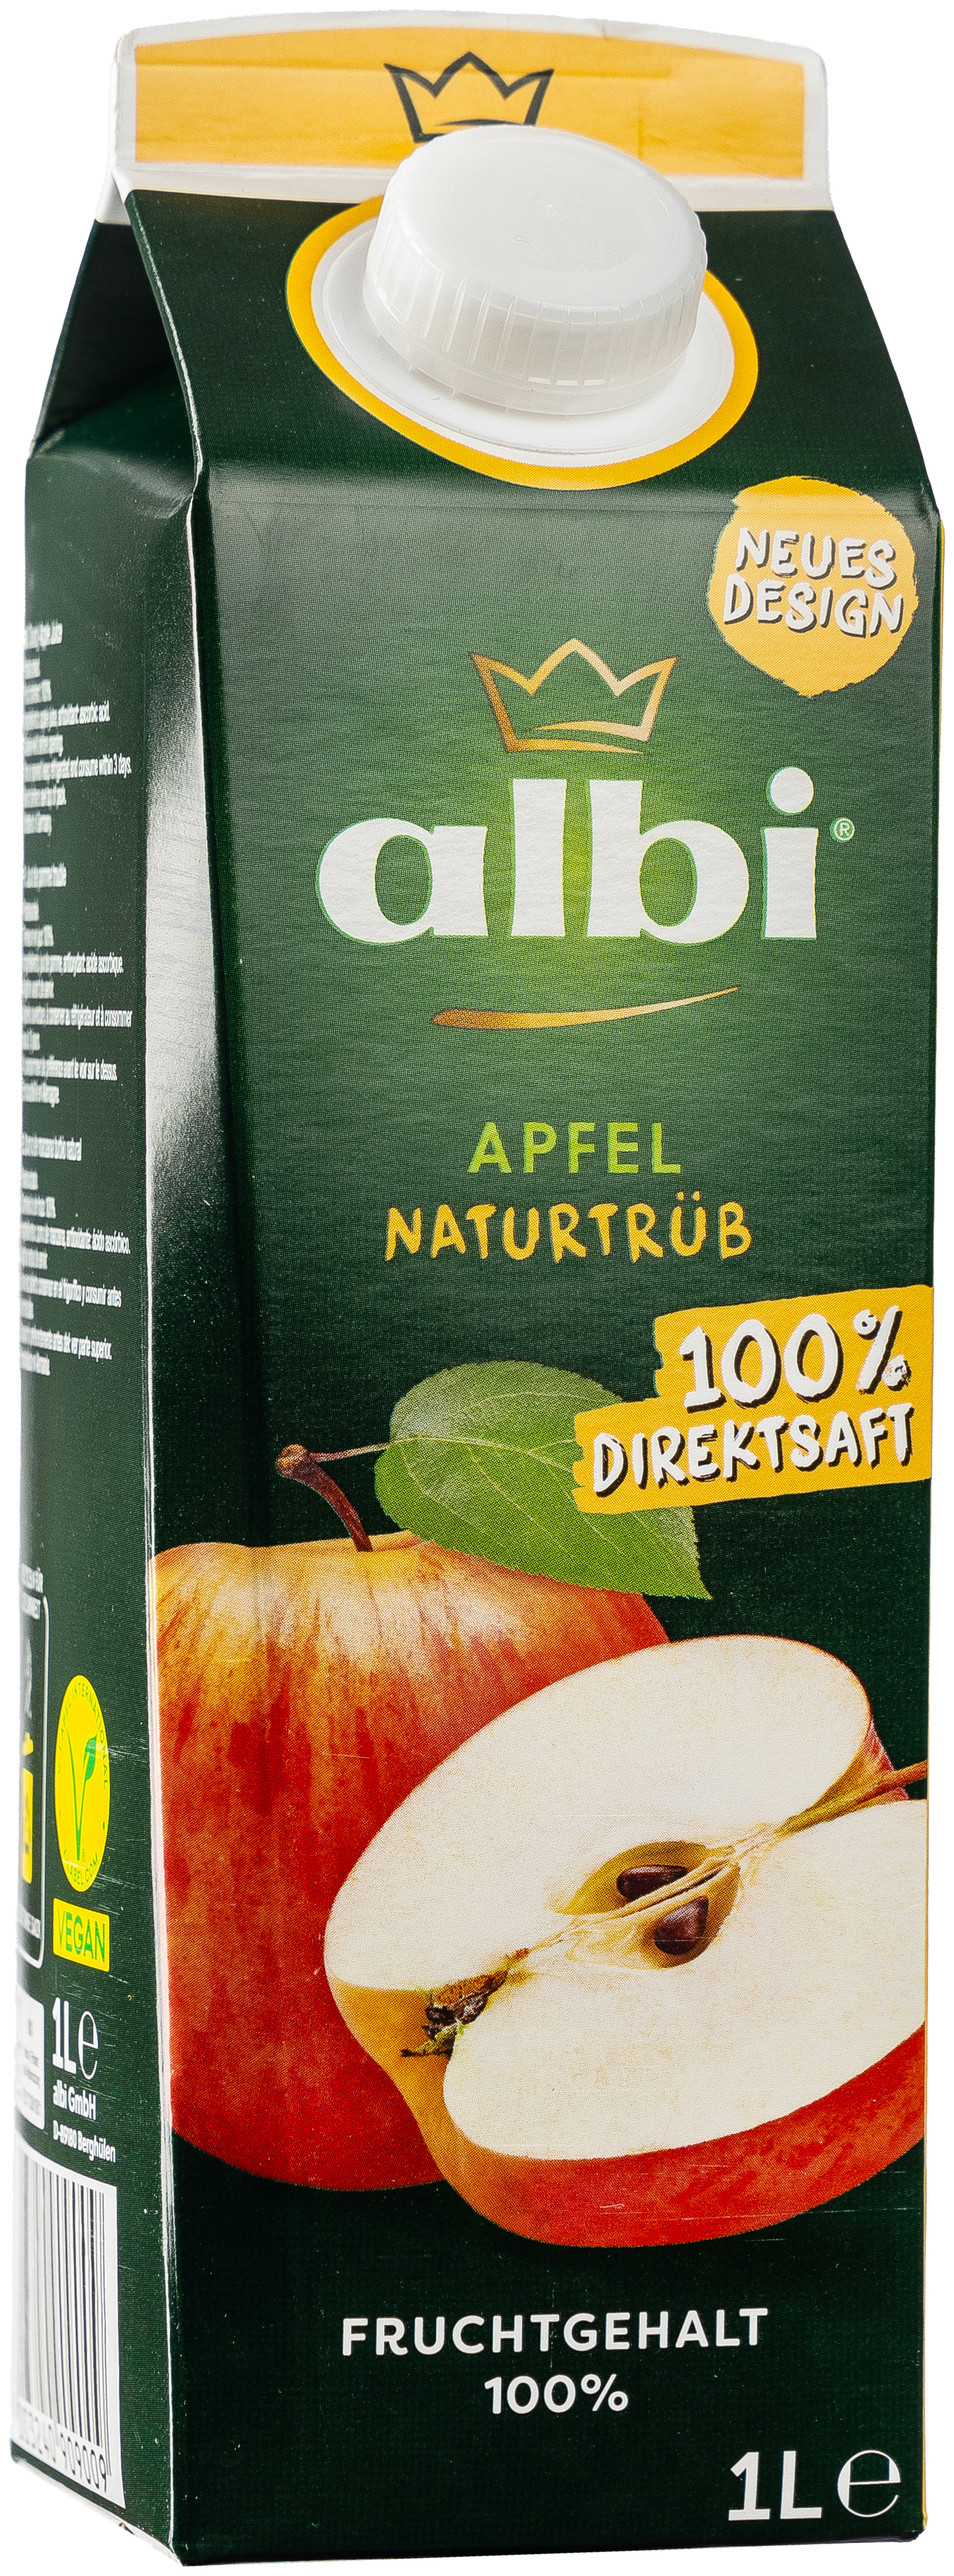 albi Apfel Naturtrüb 1,0L